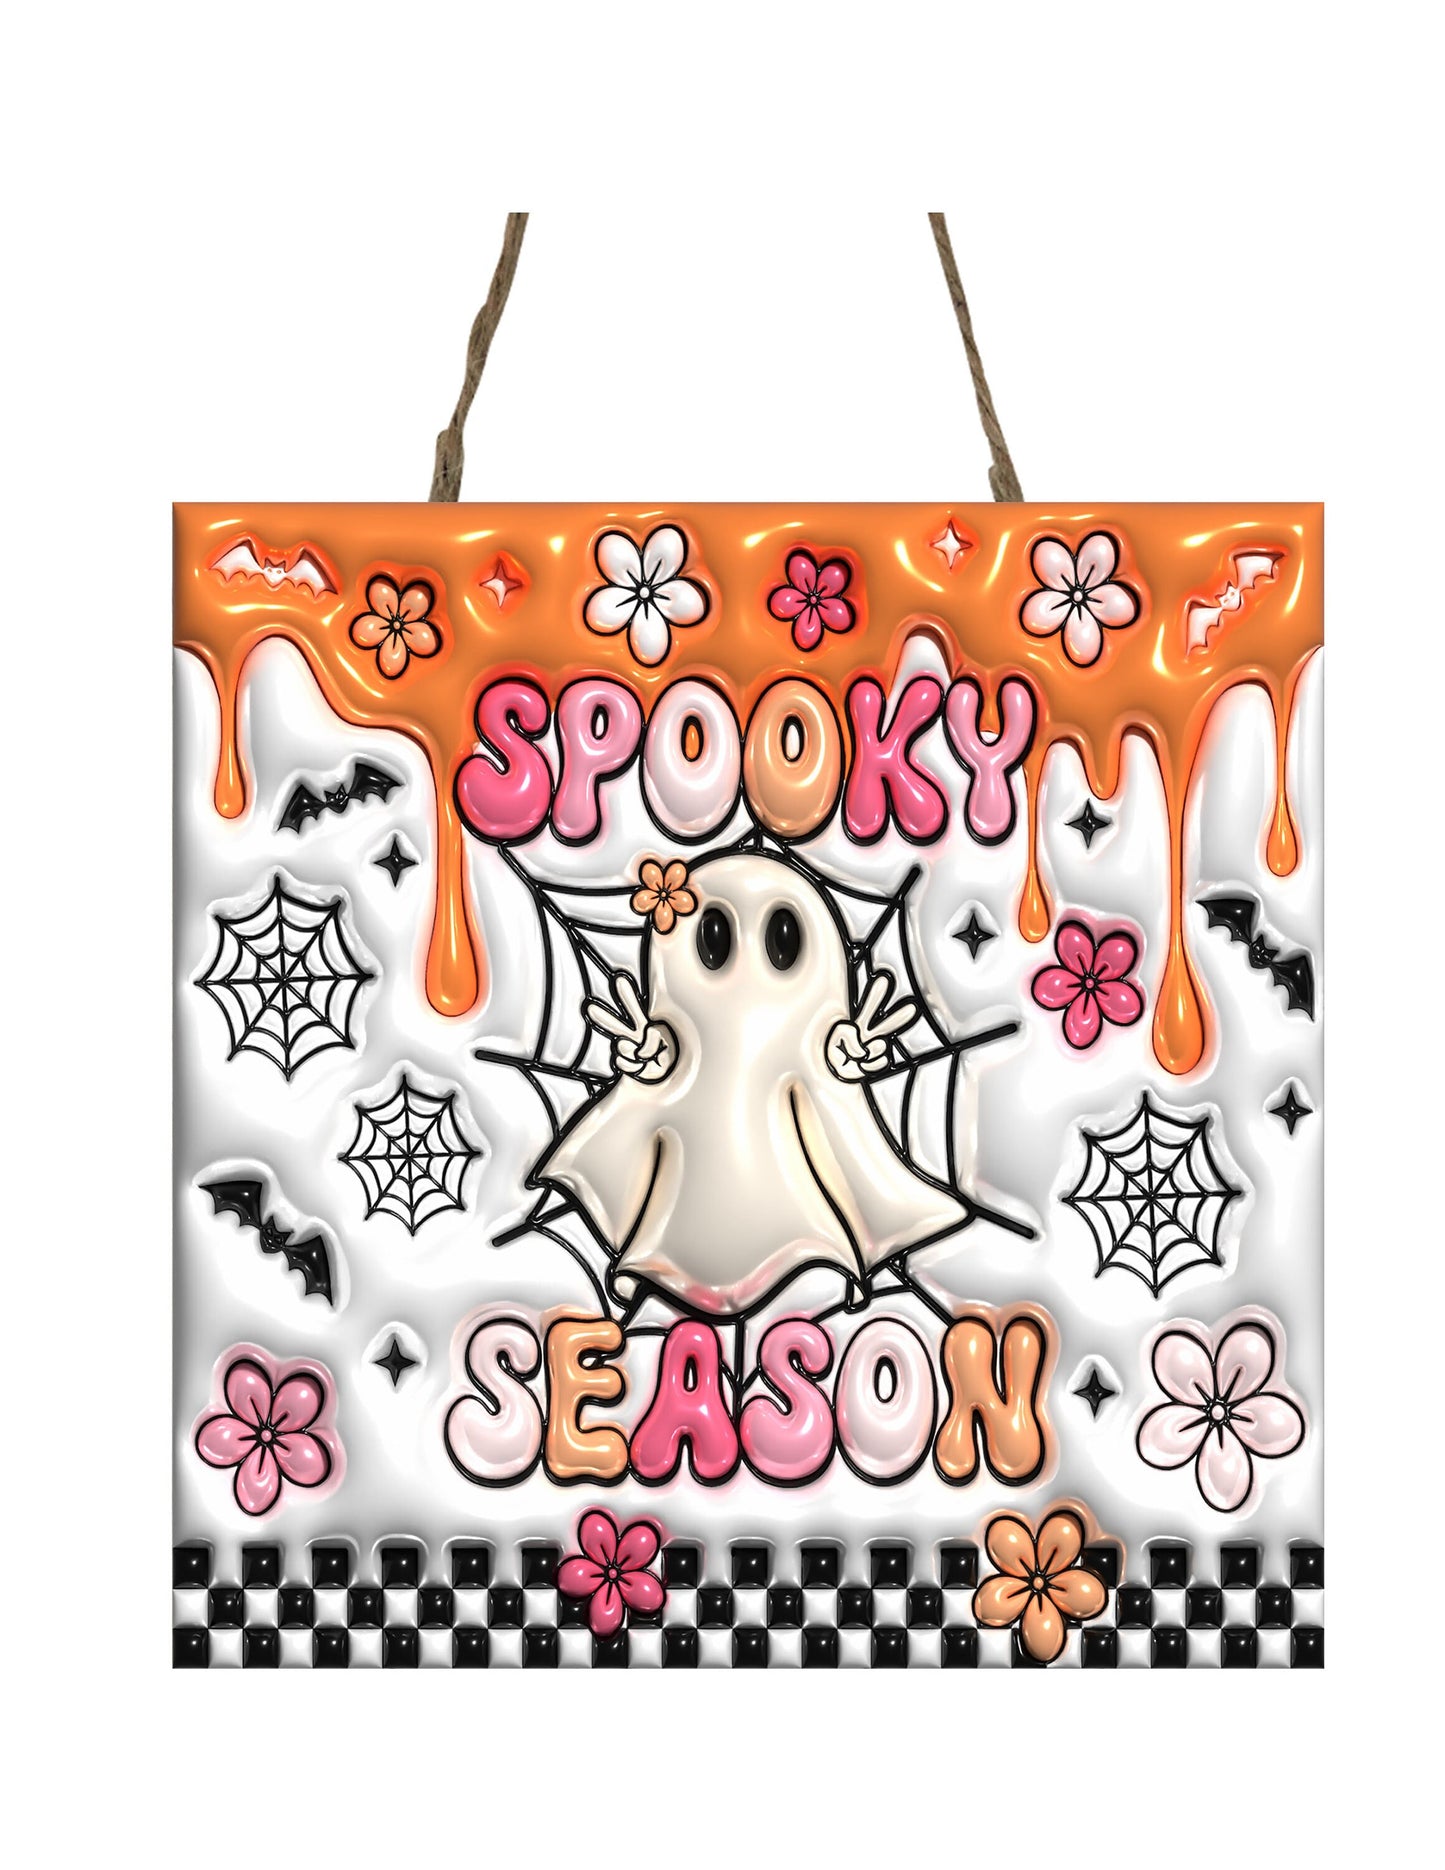 New Releases Spooky Season Halloween Hanging Wall Mini Sign Wood Home Decor, Door Hanger, Wreath Sign